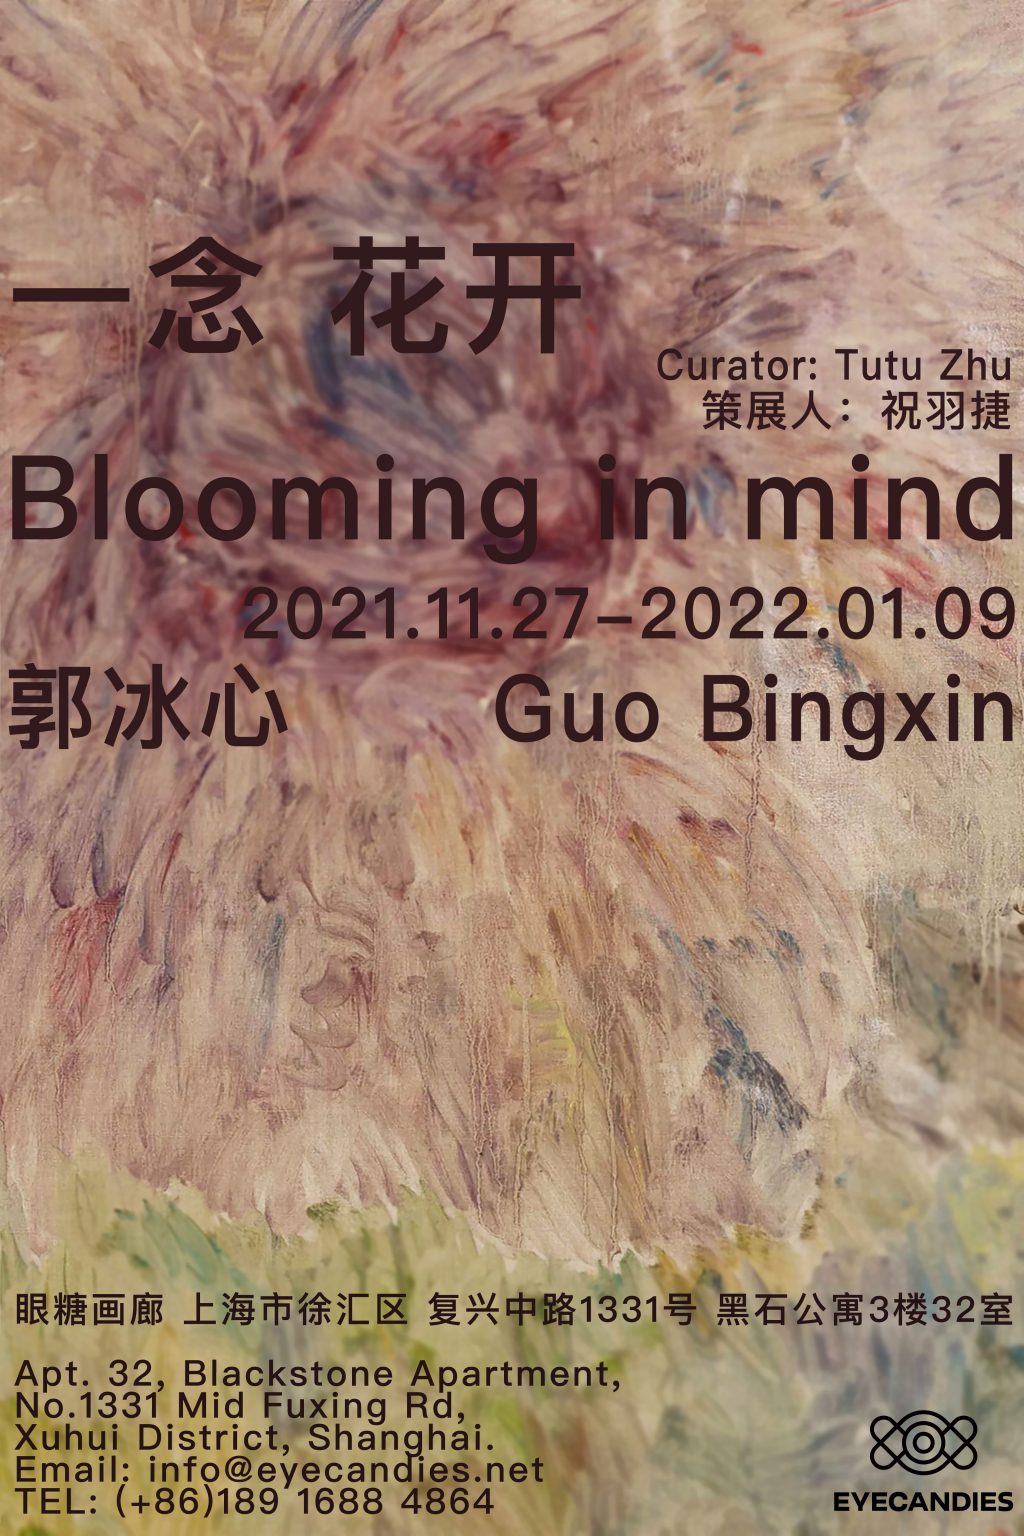 艺术家郭冰心大型花卉系列个展《一念花开》11月27日于眼糖开幕